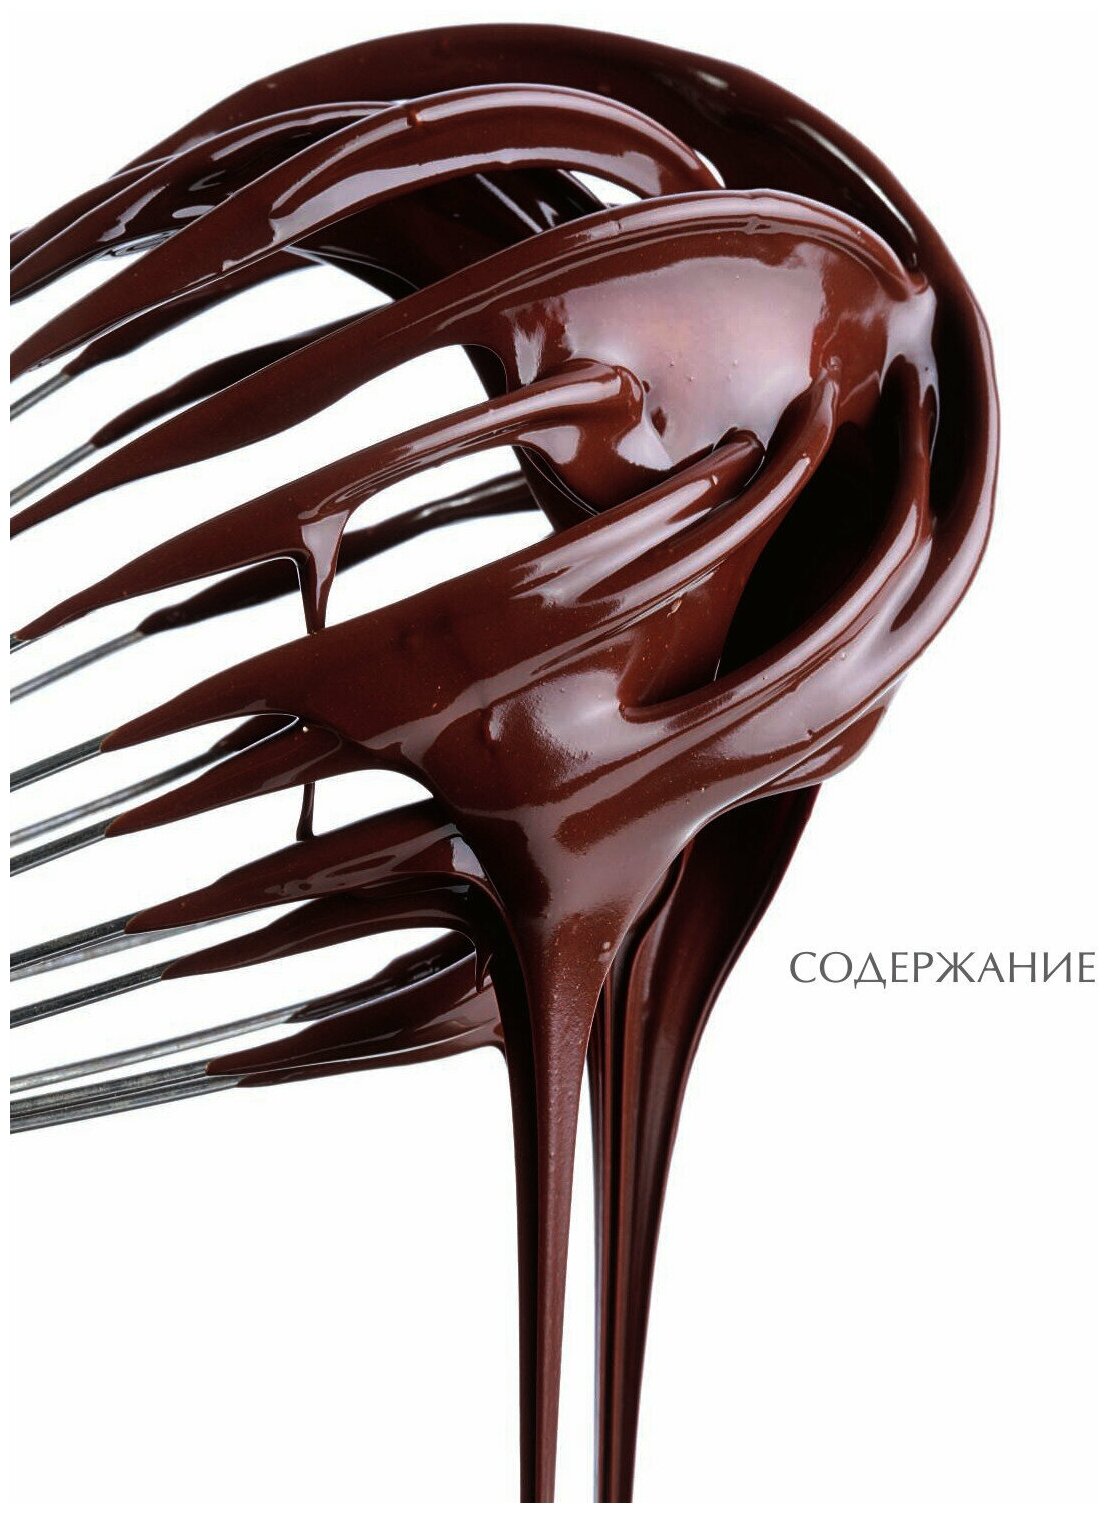 Шоколадный сомелье. Удивительное путешествие в мир шоколада - фото №6